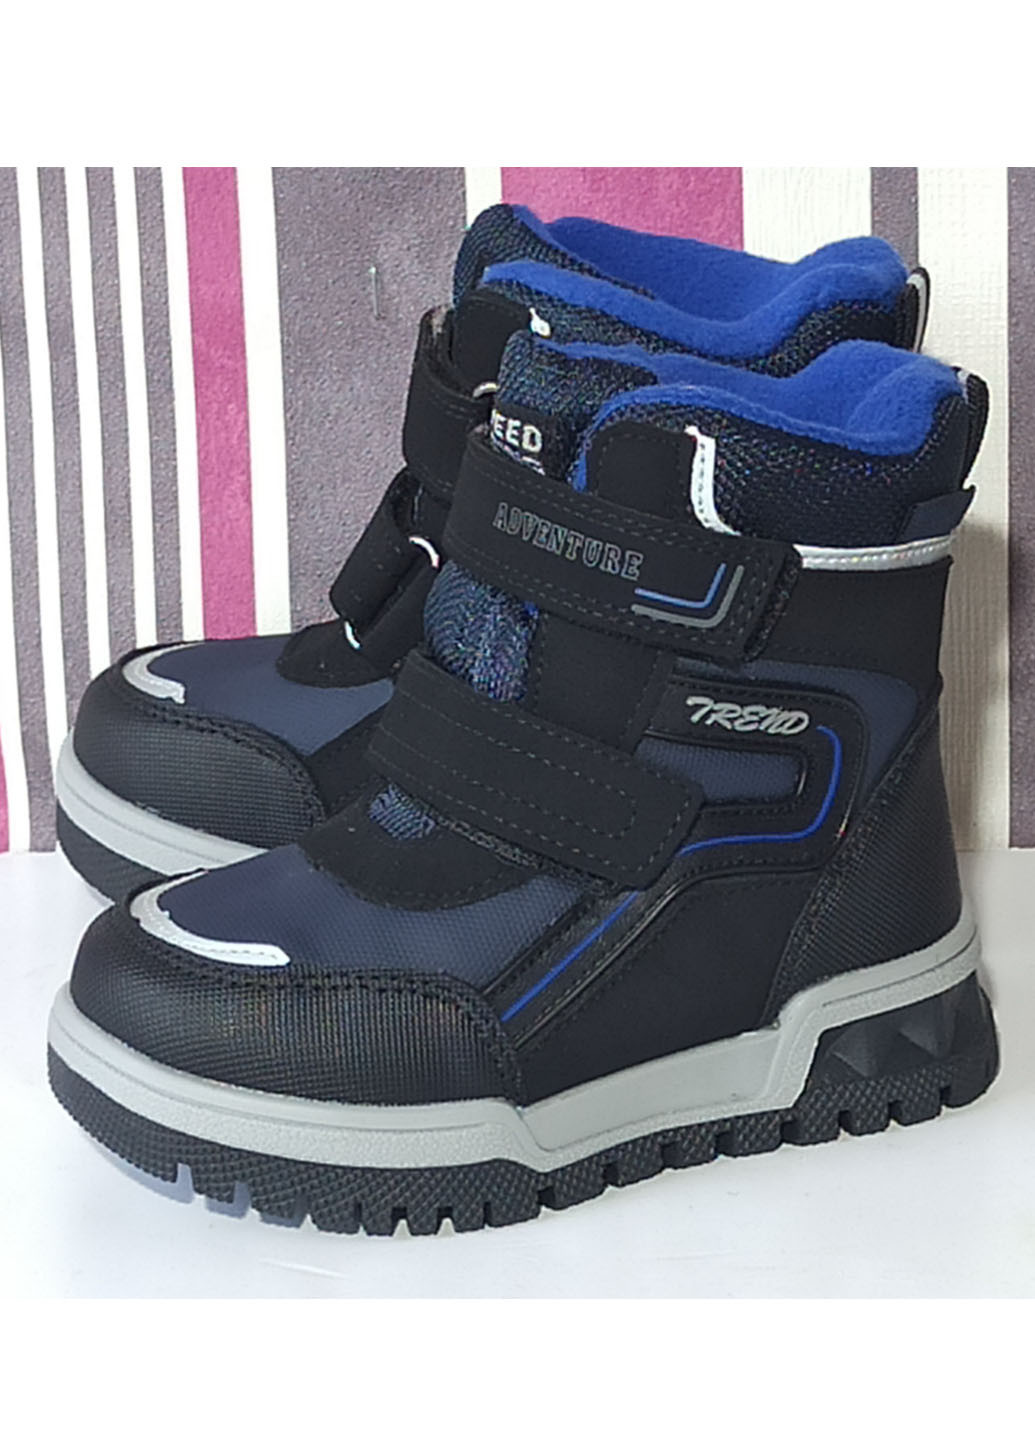 Синие повседневные зимние детские зимние ботинки для мальчика на овчине том м 10806д синие Tom.M